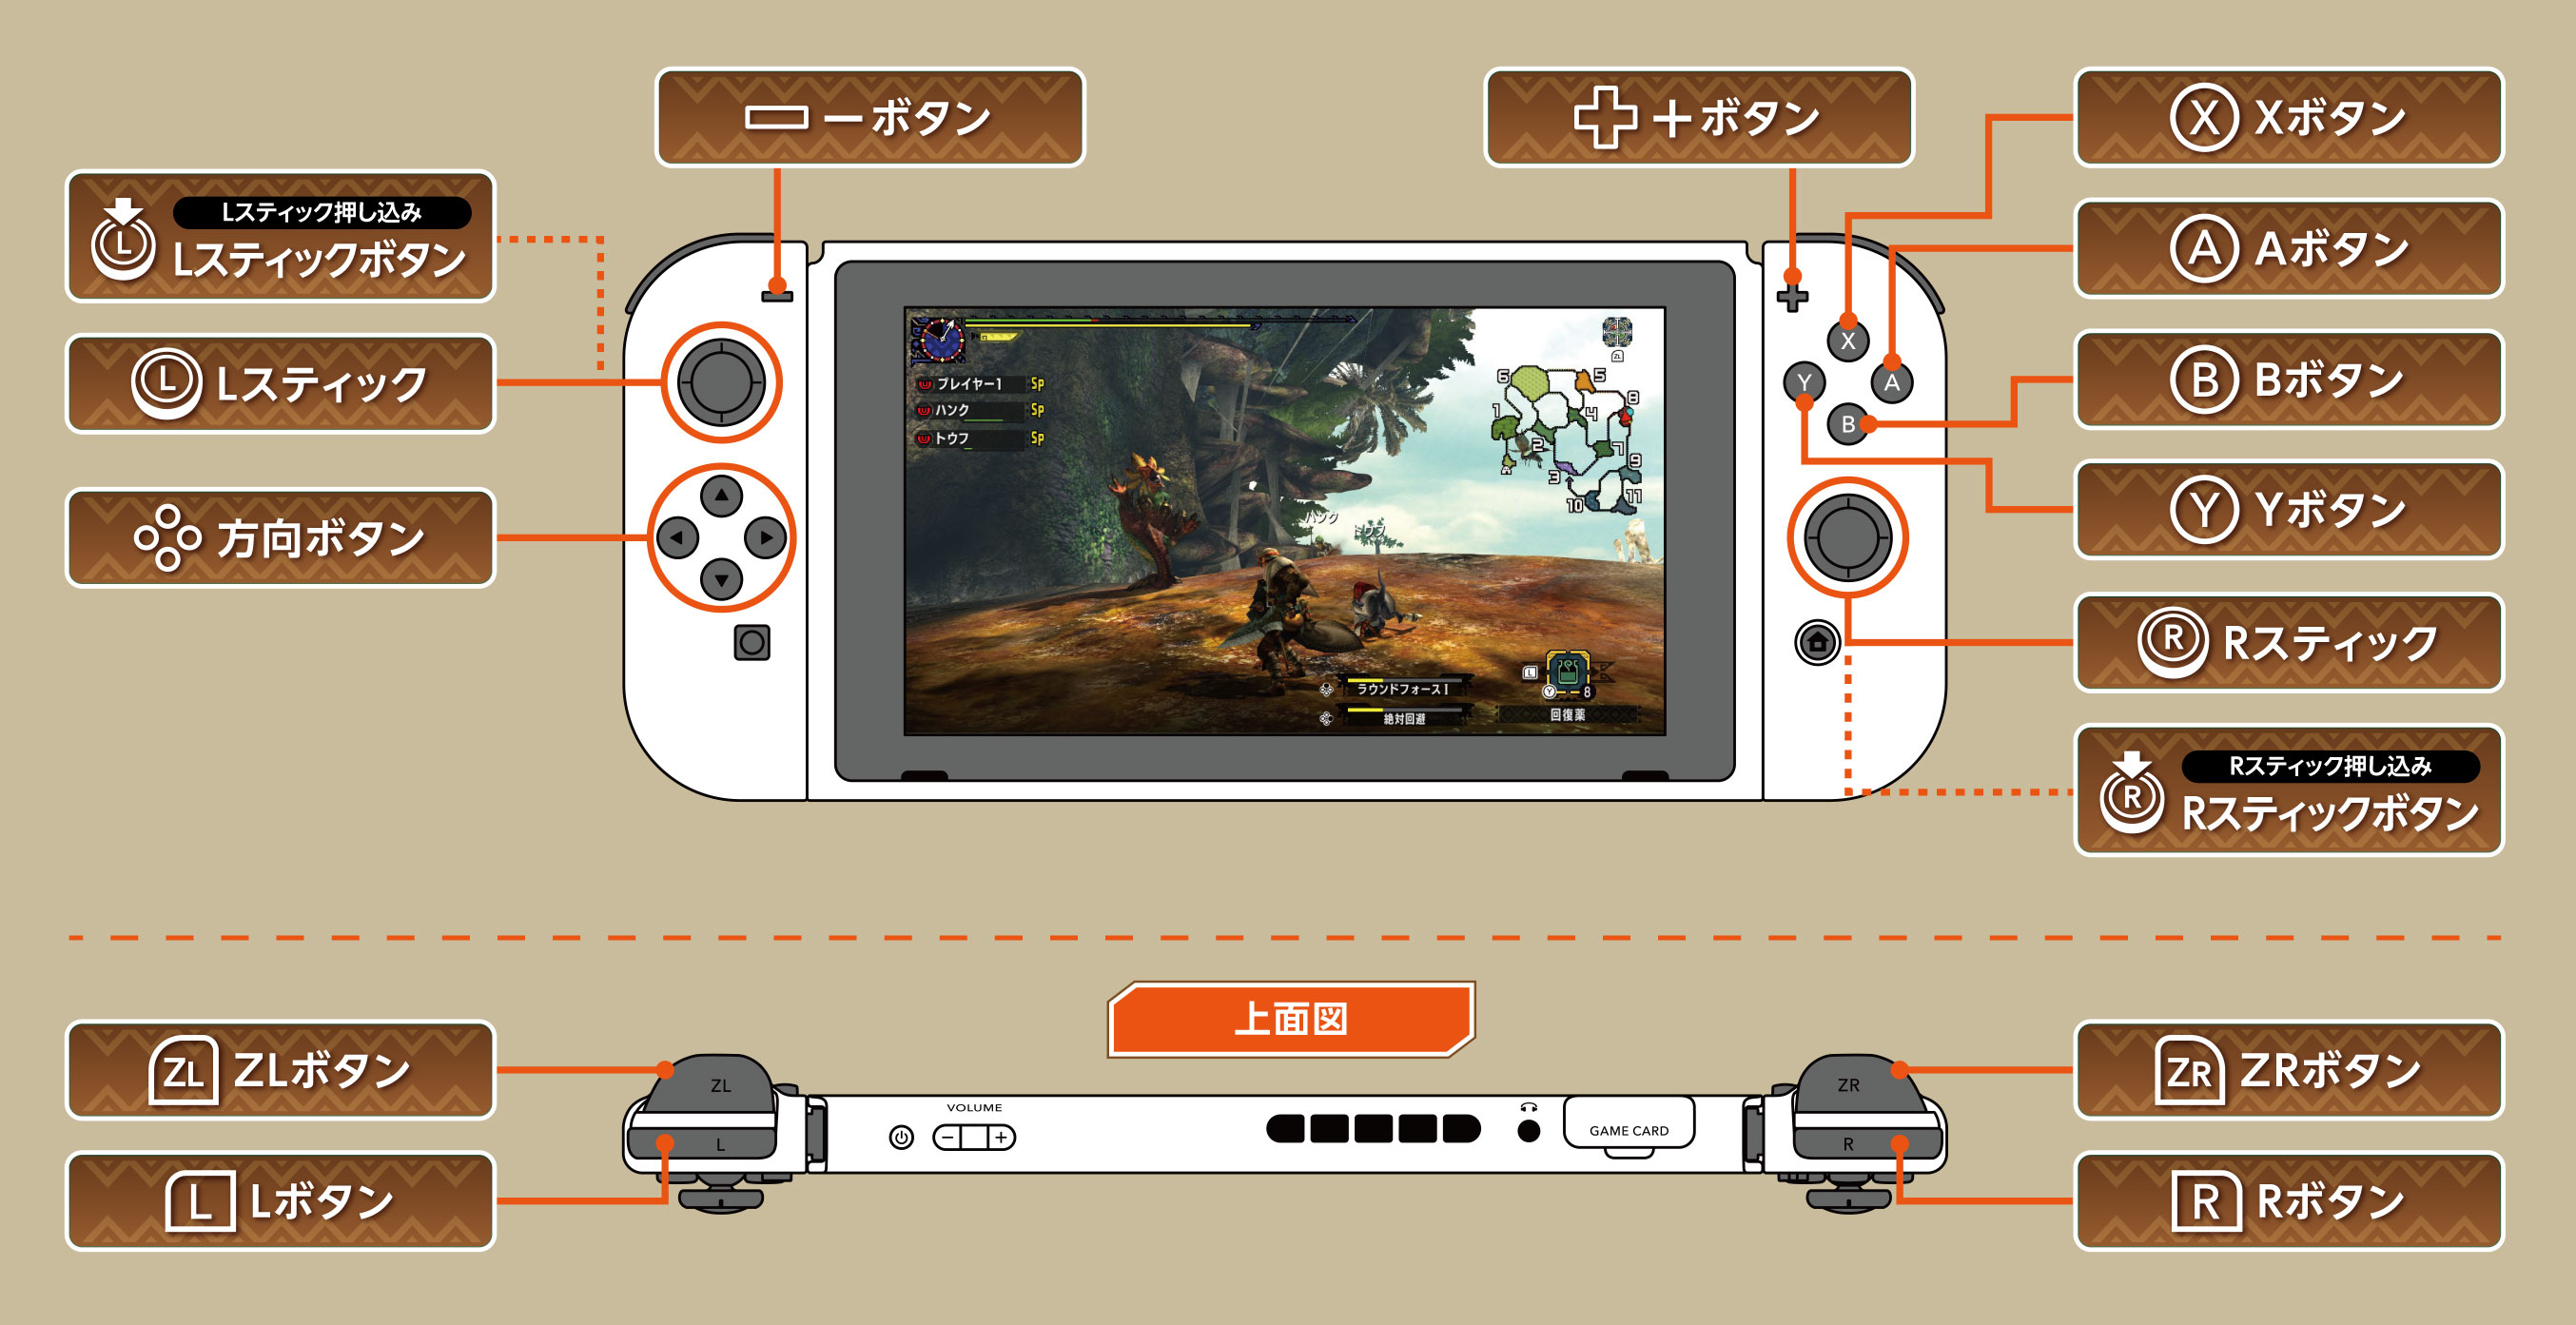 モンスターハンターダブルクロス Nintendo Switch Ver 公式webマニュアル クエスト中のボタン操作 ハンター